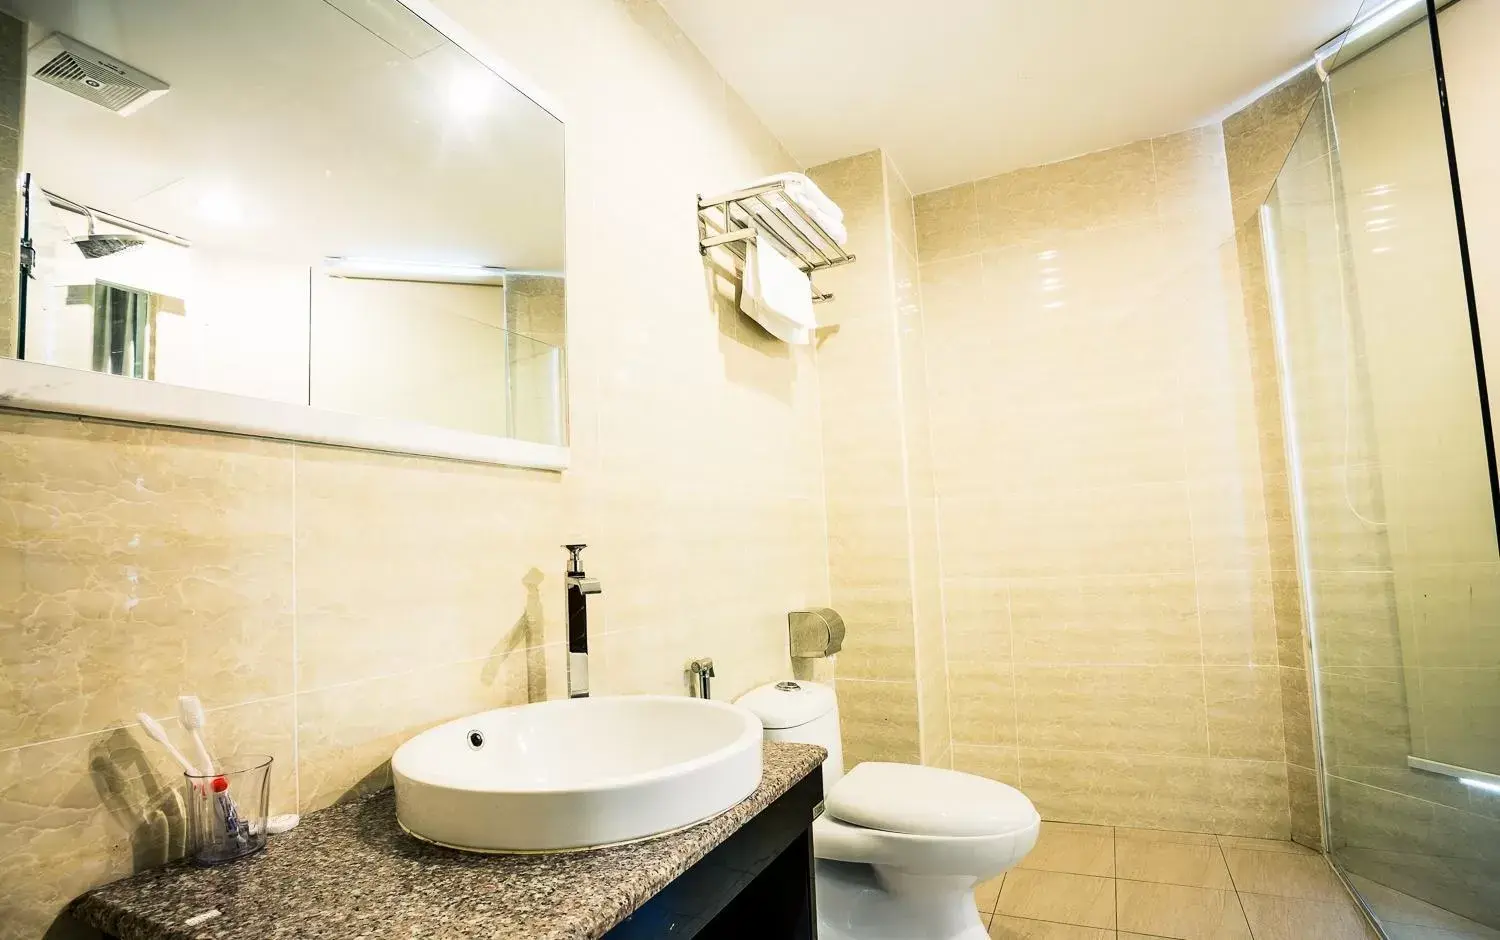 Bathroom in Golden Roof Hotel Ampang Ipoh